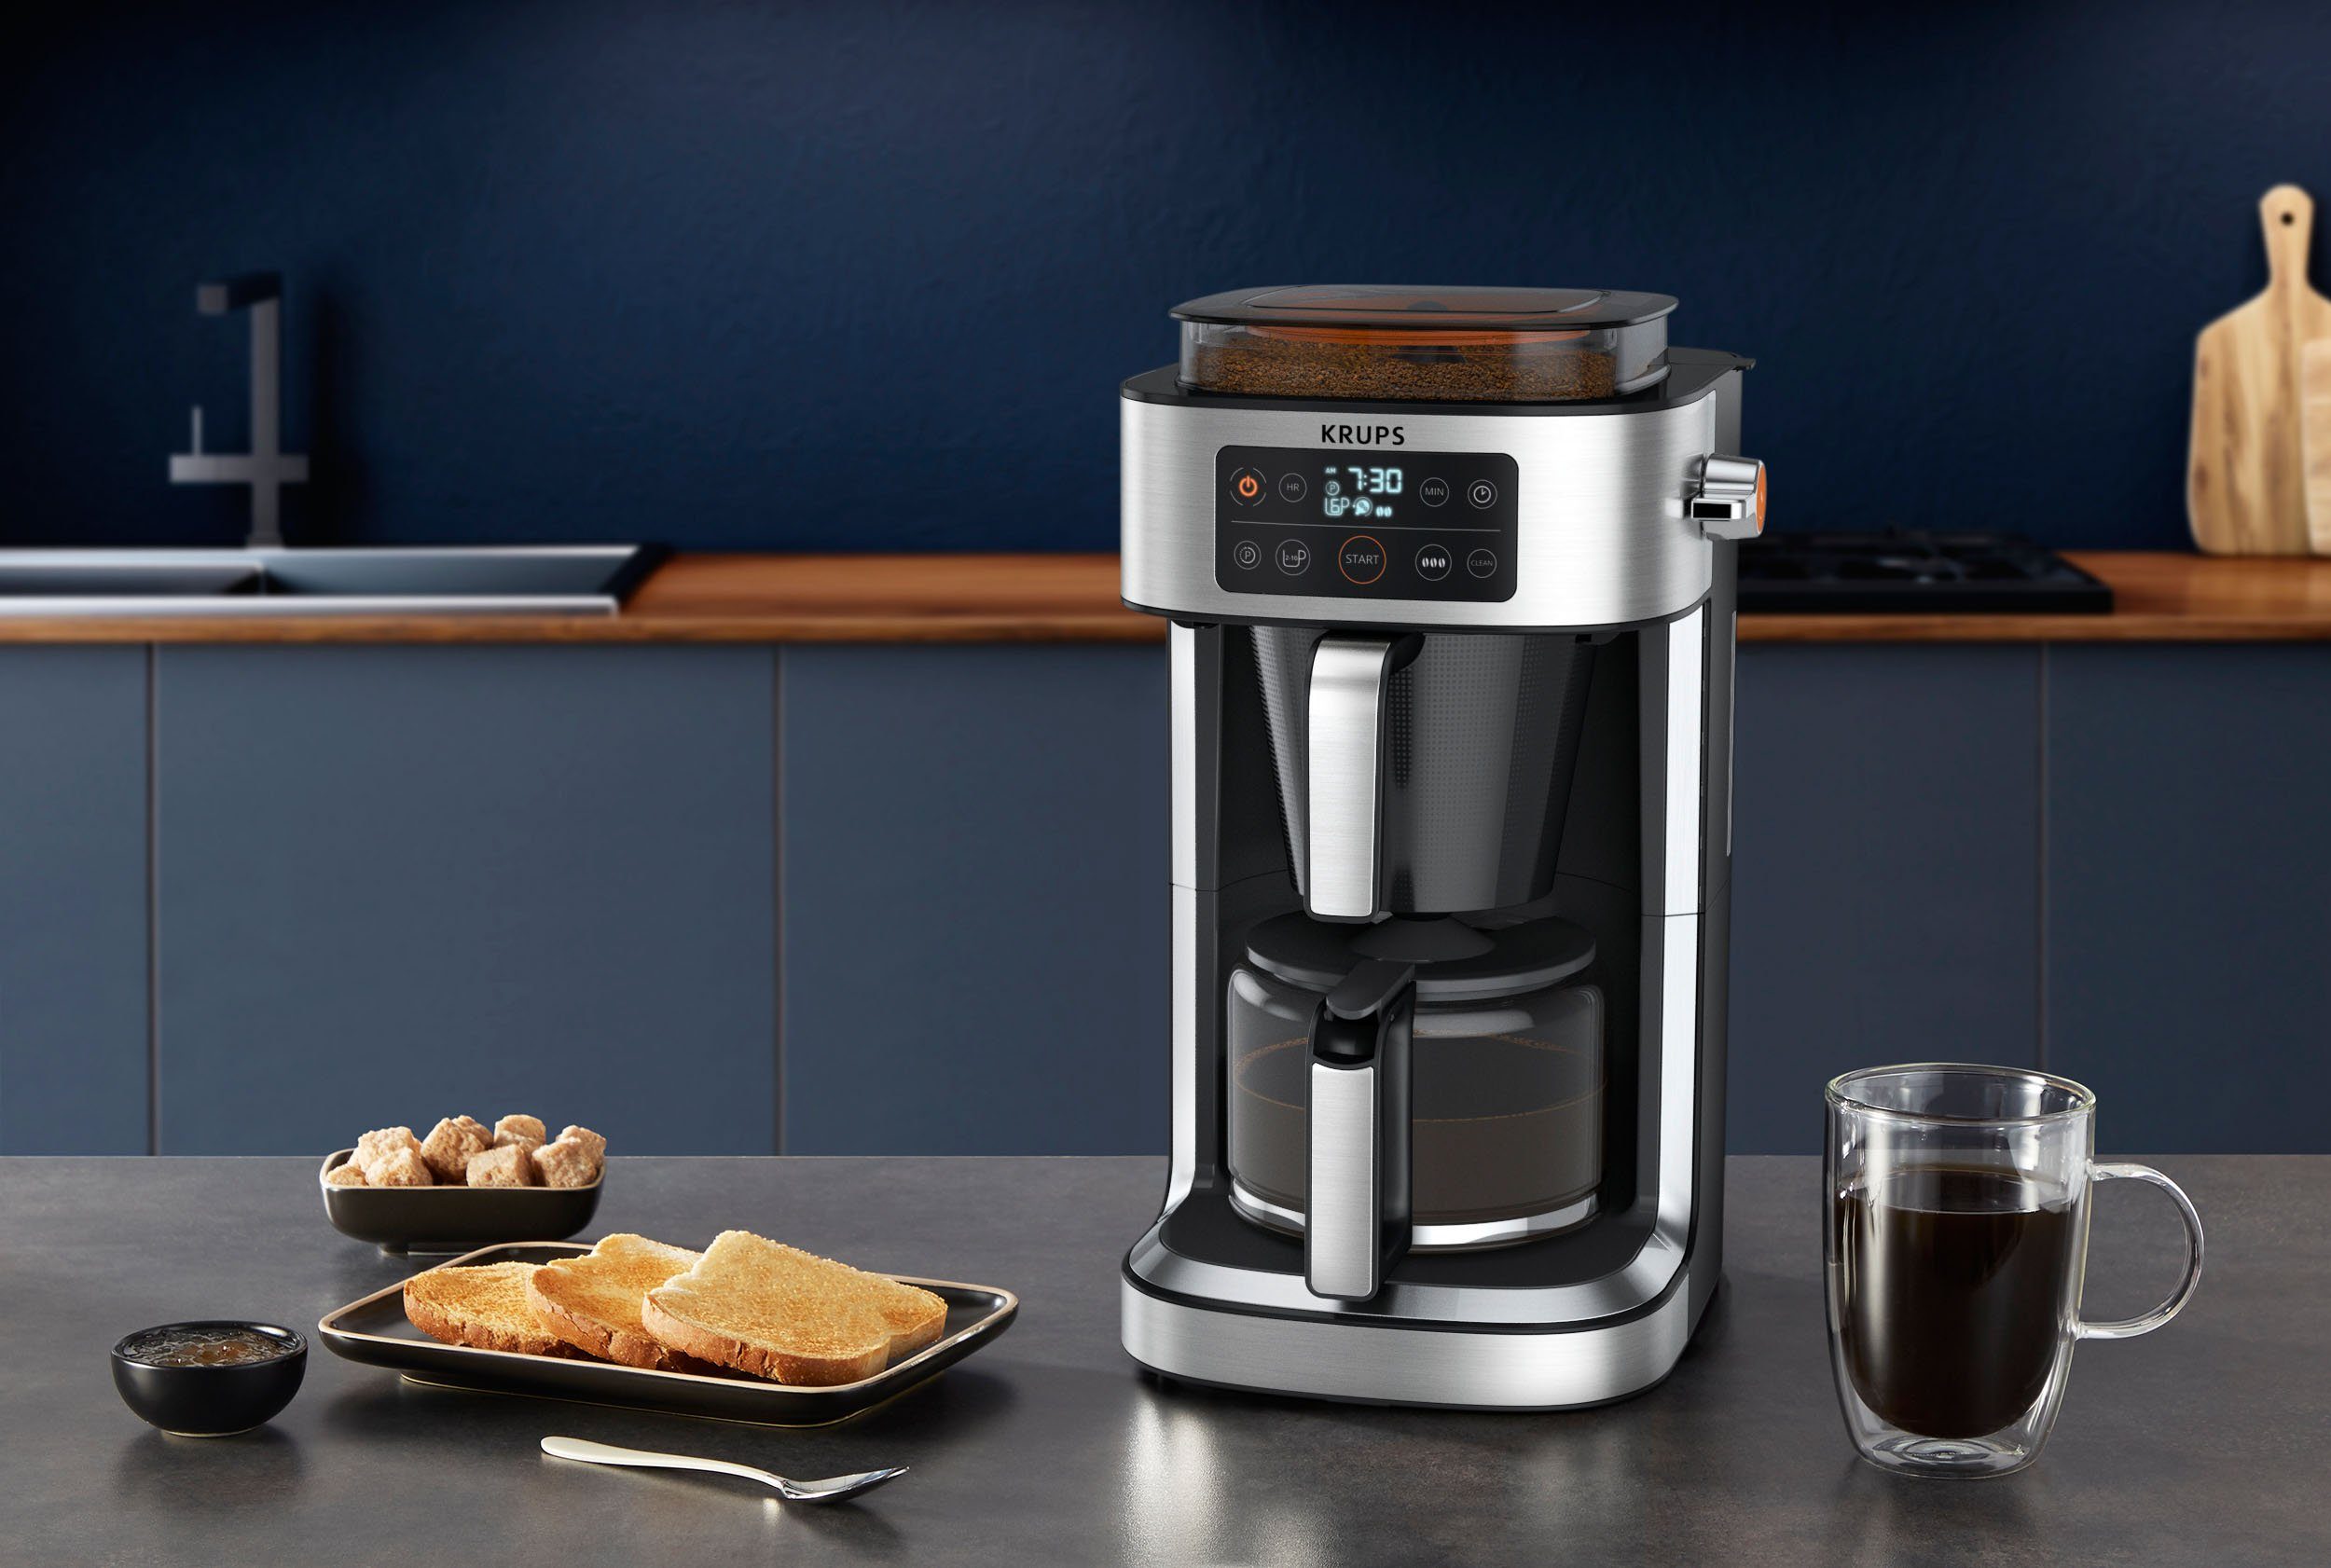 Krups Filterkaffeemaschine KM760D Aroma Partner, für 1,25l Kaffeekanne, g bis frischen zu Kaffee Kaffee-Vorratsbox 400 integrierte